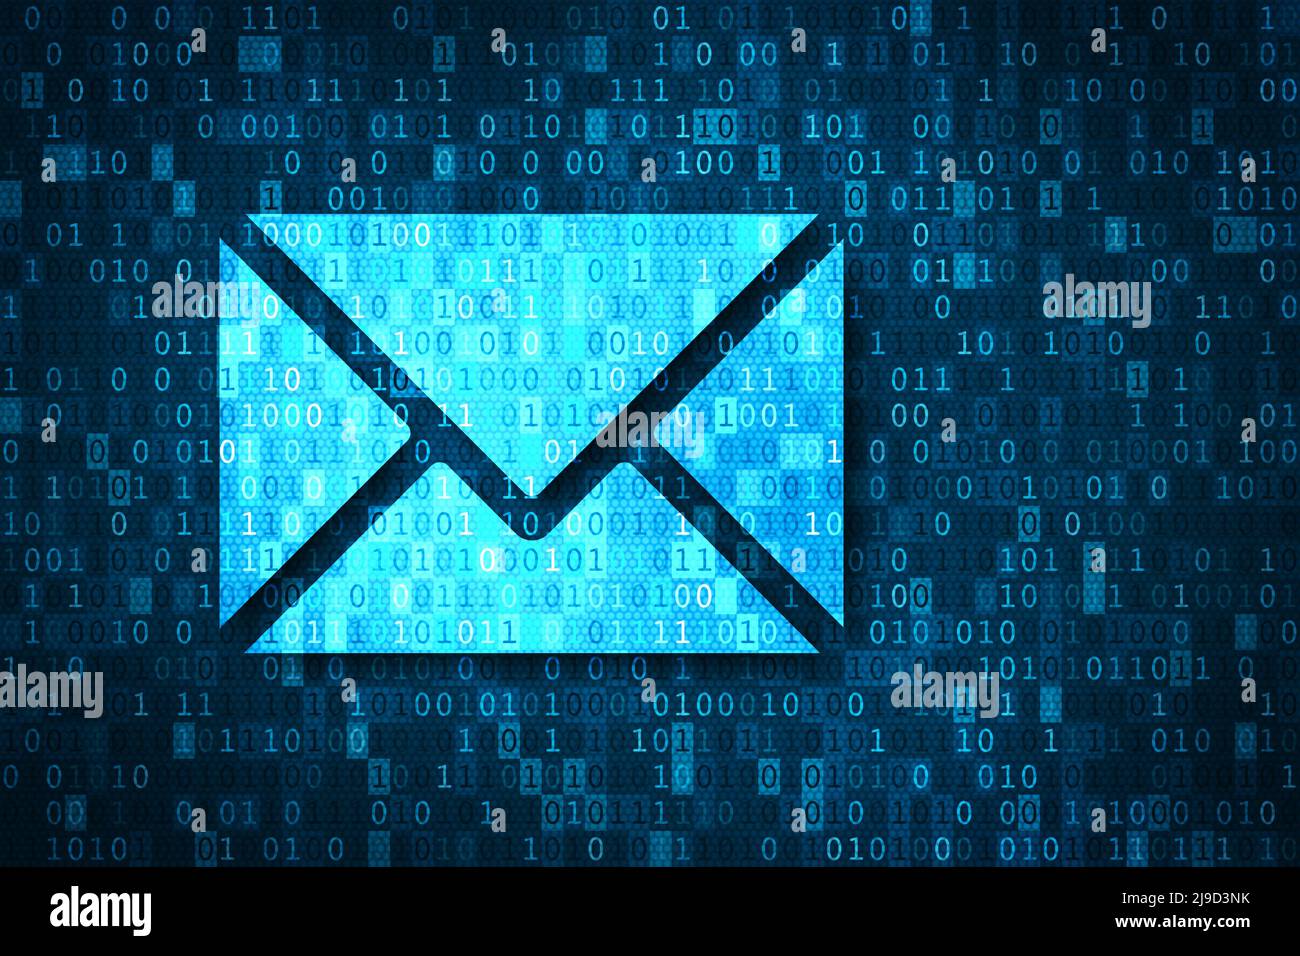 E-Mail- und Cyber-Sicherheitskonzept. Gefahren für Phishing, Hacking, Viren und Kontodiebstahl. Abbildung mit blauem E-Mail-Symbol und Binärcode-Hintergrund. Stockfoto